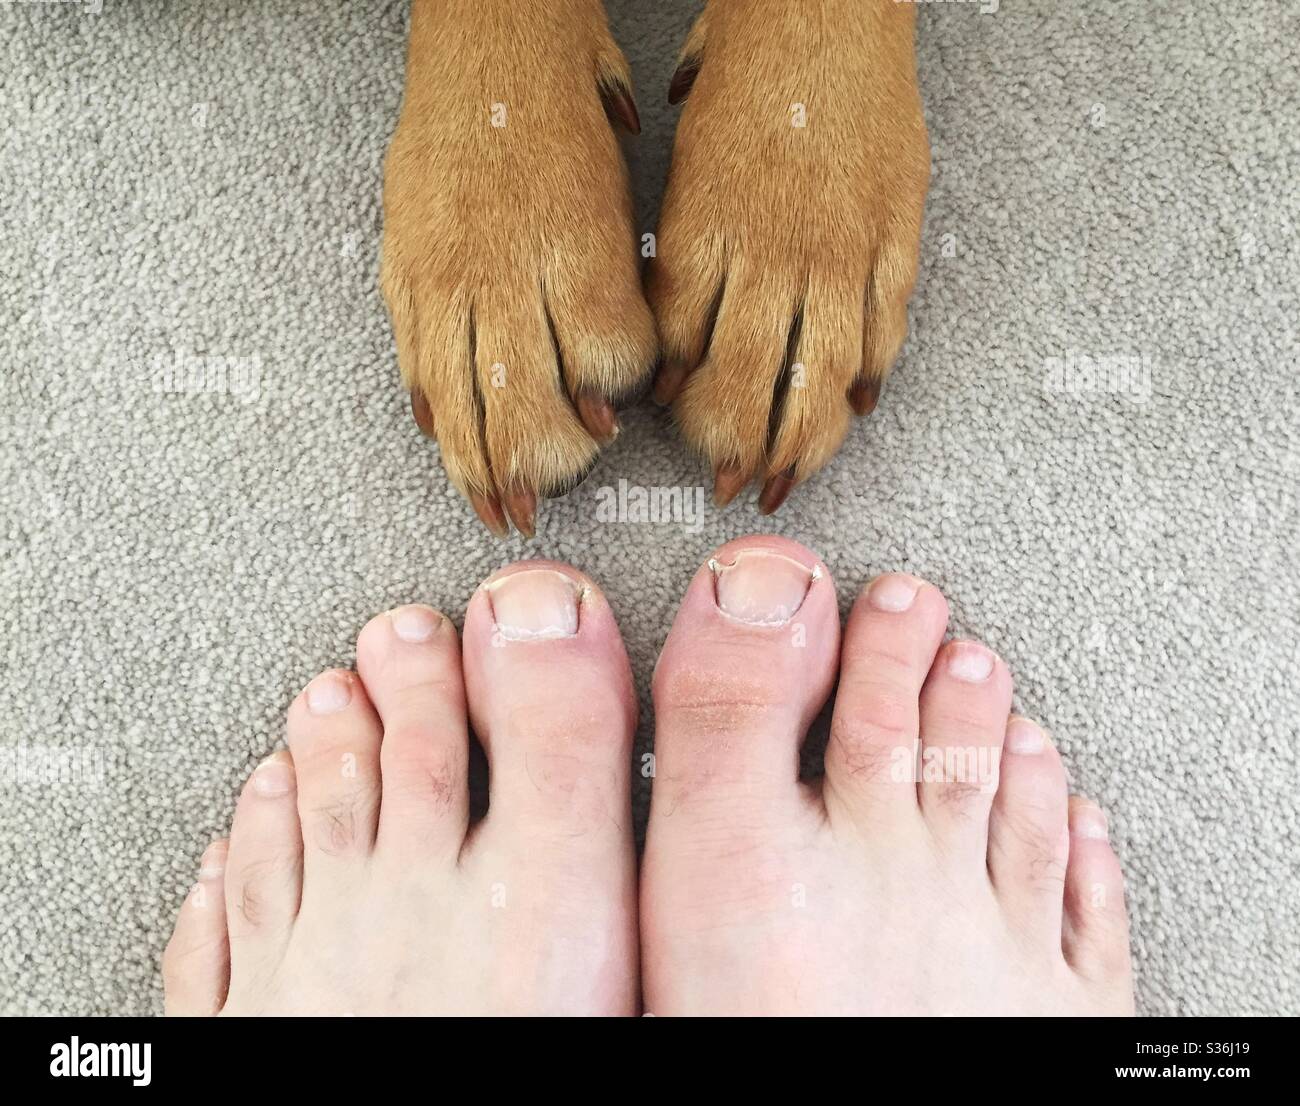 Ein Fuß-Selfie von menschlichen Füßen und Hundehoten Stockfoto